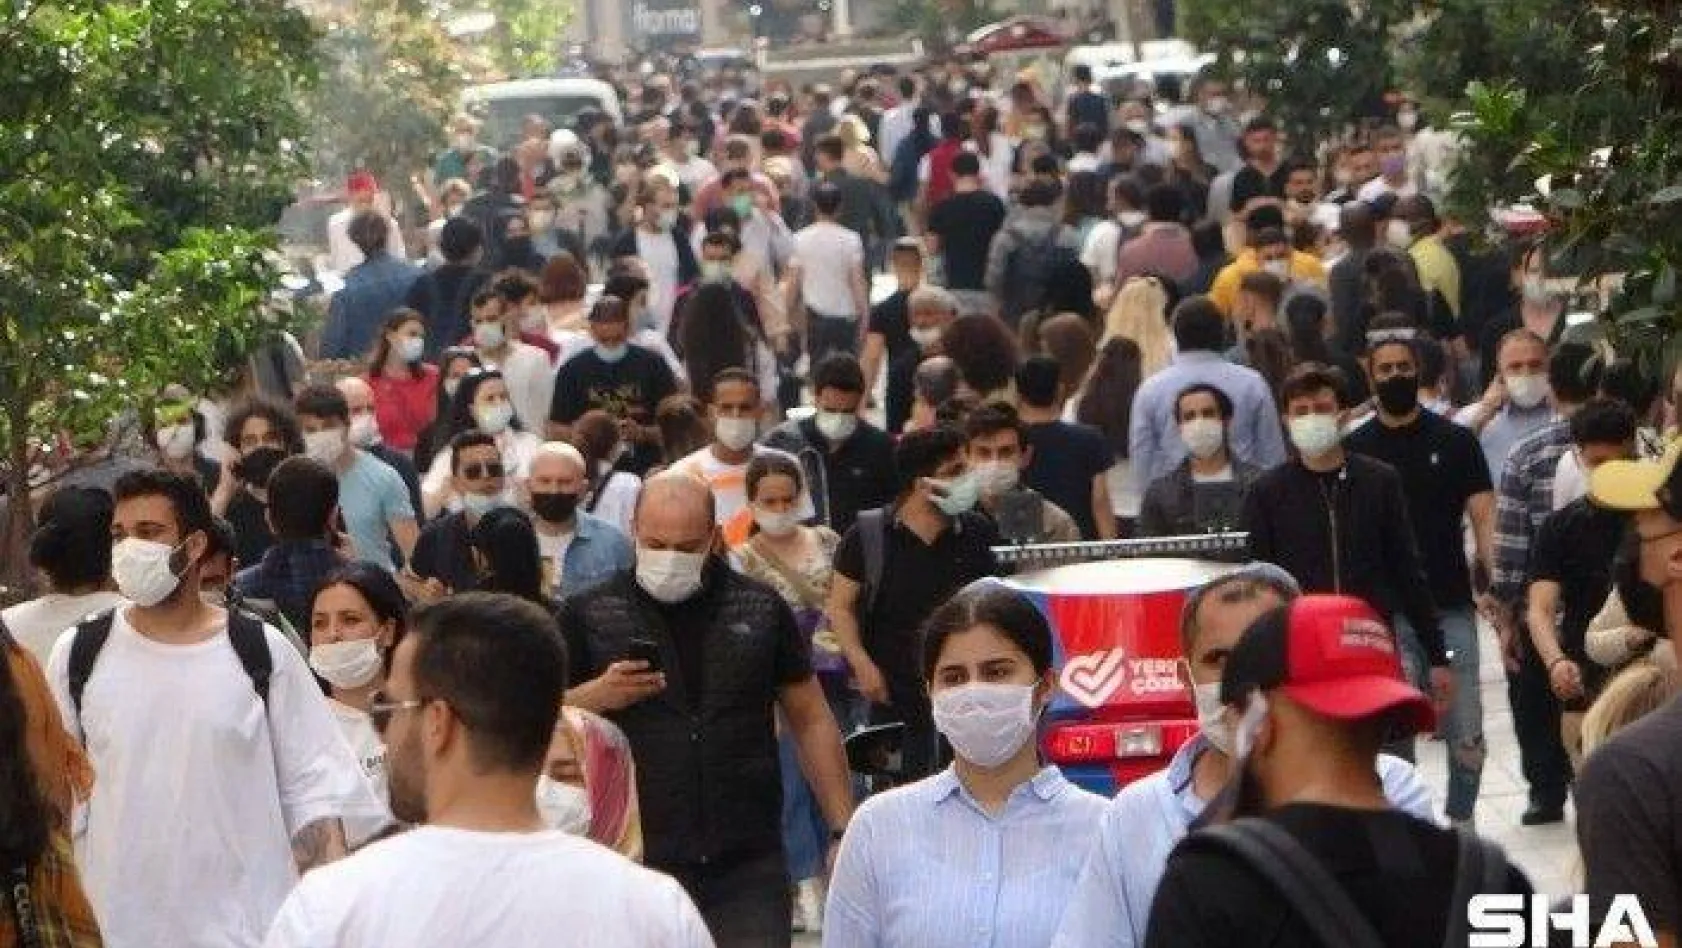 Tam kapanma bitti, vatandaşlar İstiklal Caddesi'ne akın etti